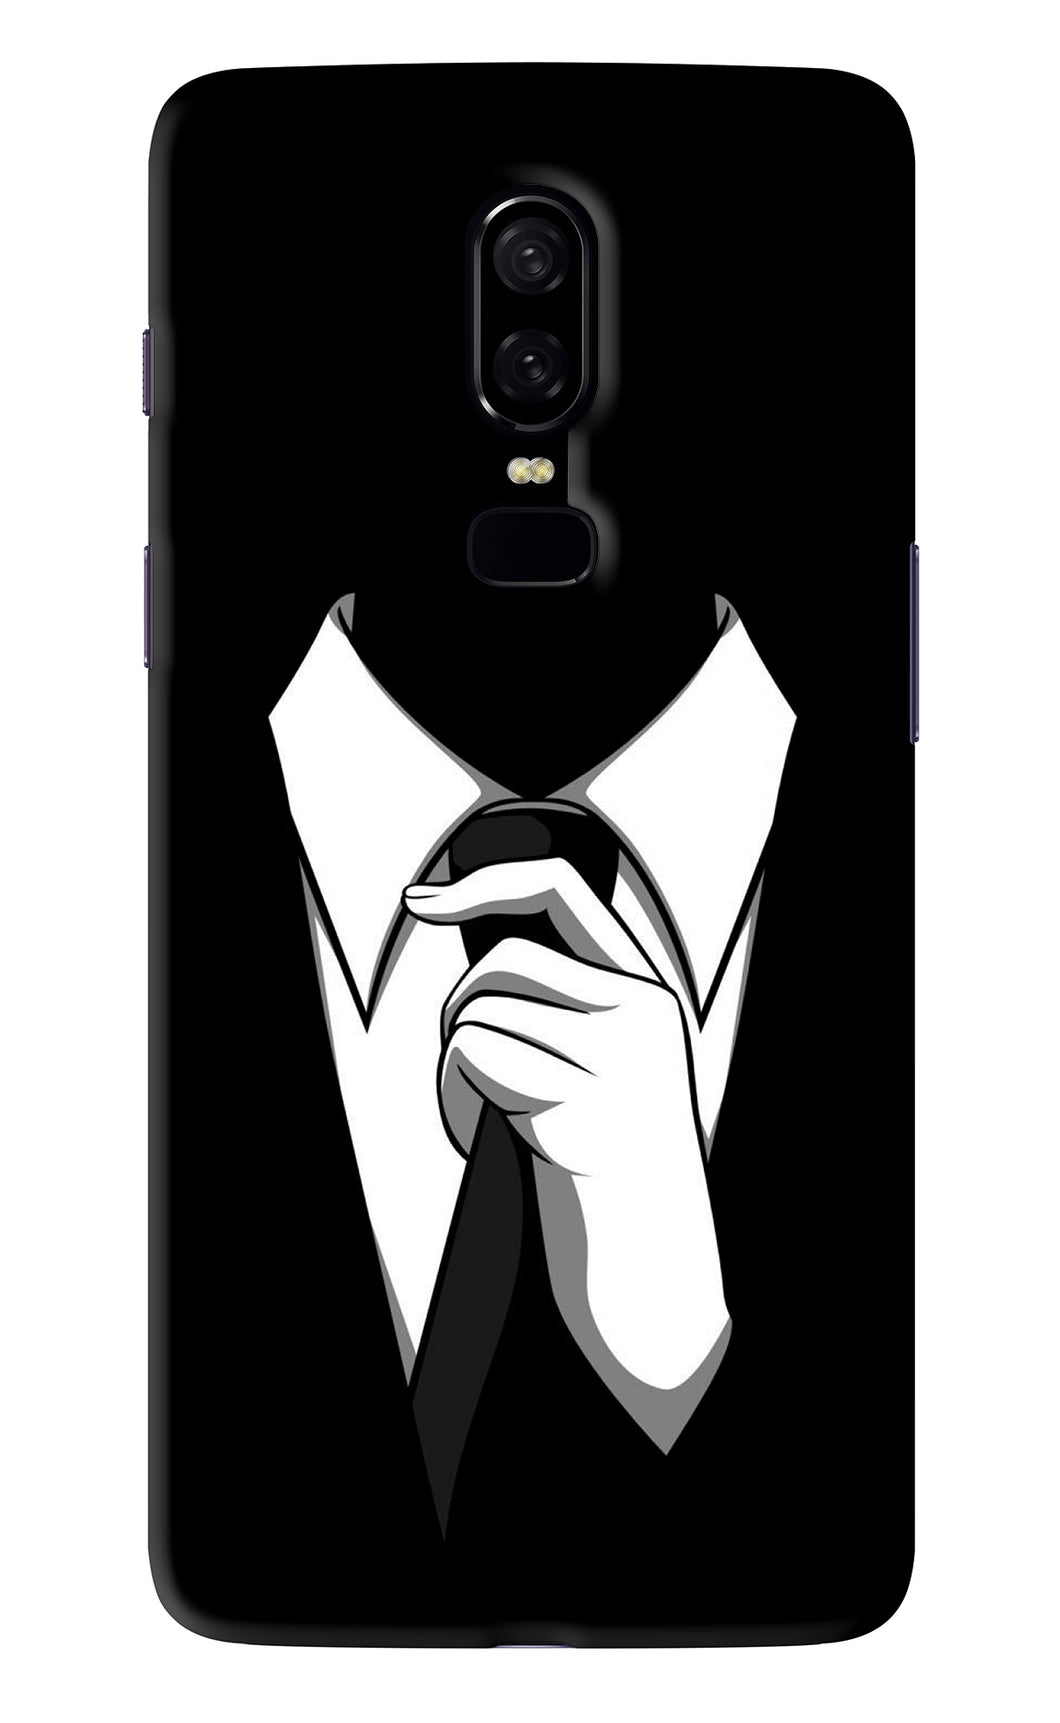 Black Tie OnePlus 6 Back Skin Wrap